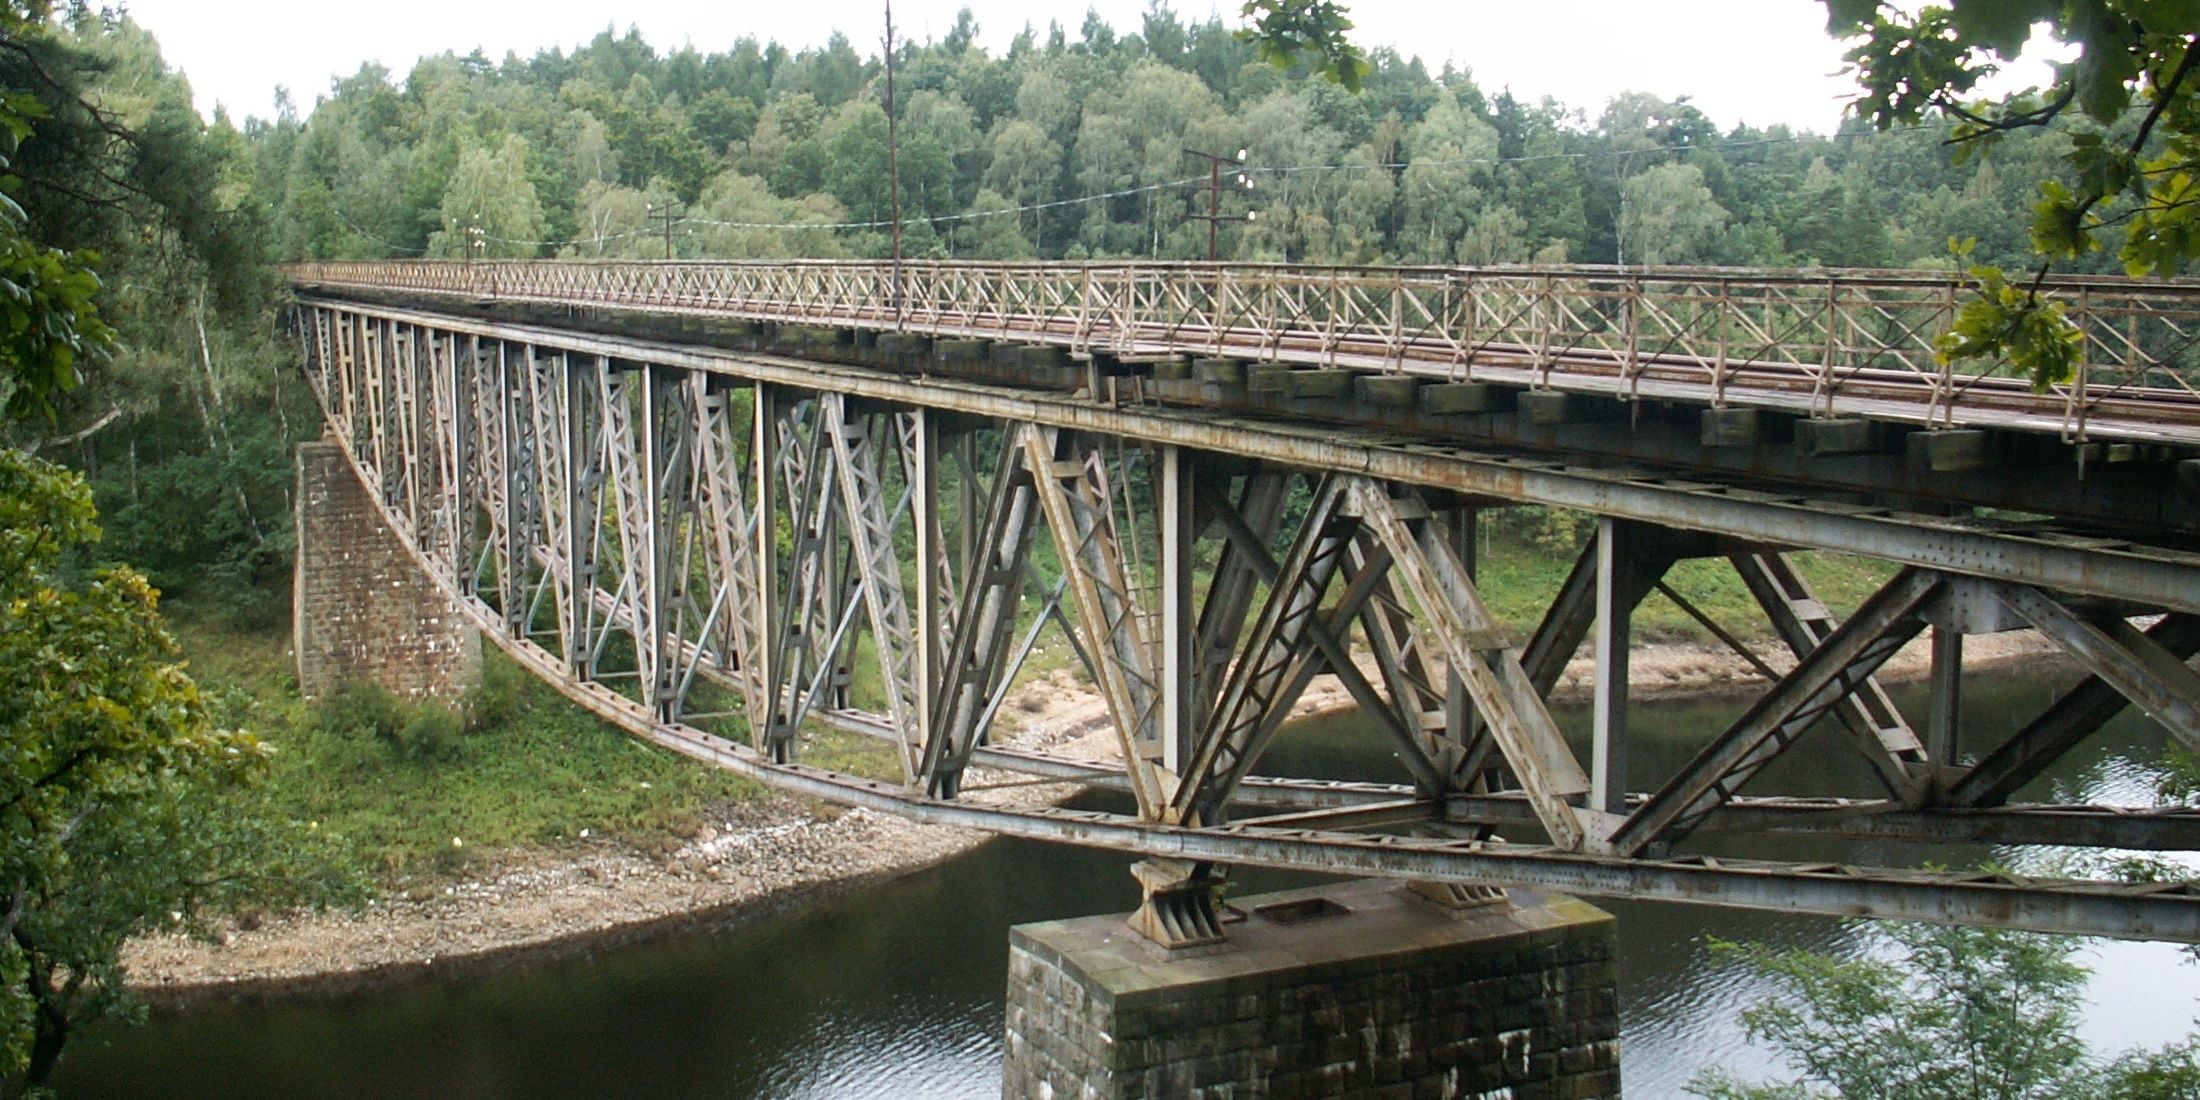 The_Pilchowicki_Bridge_in_Poland